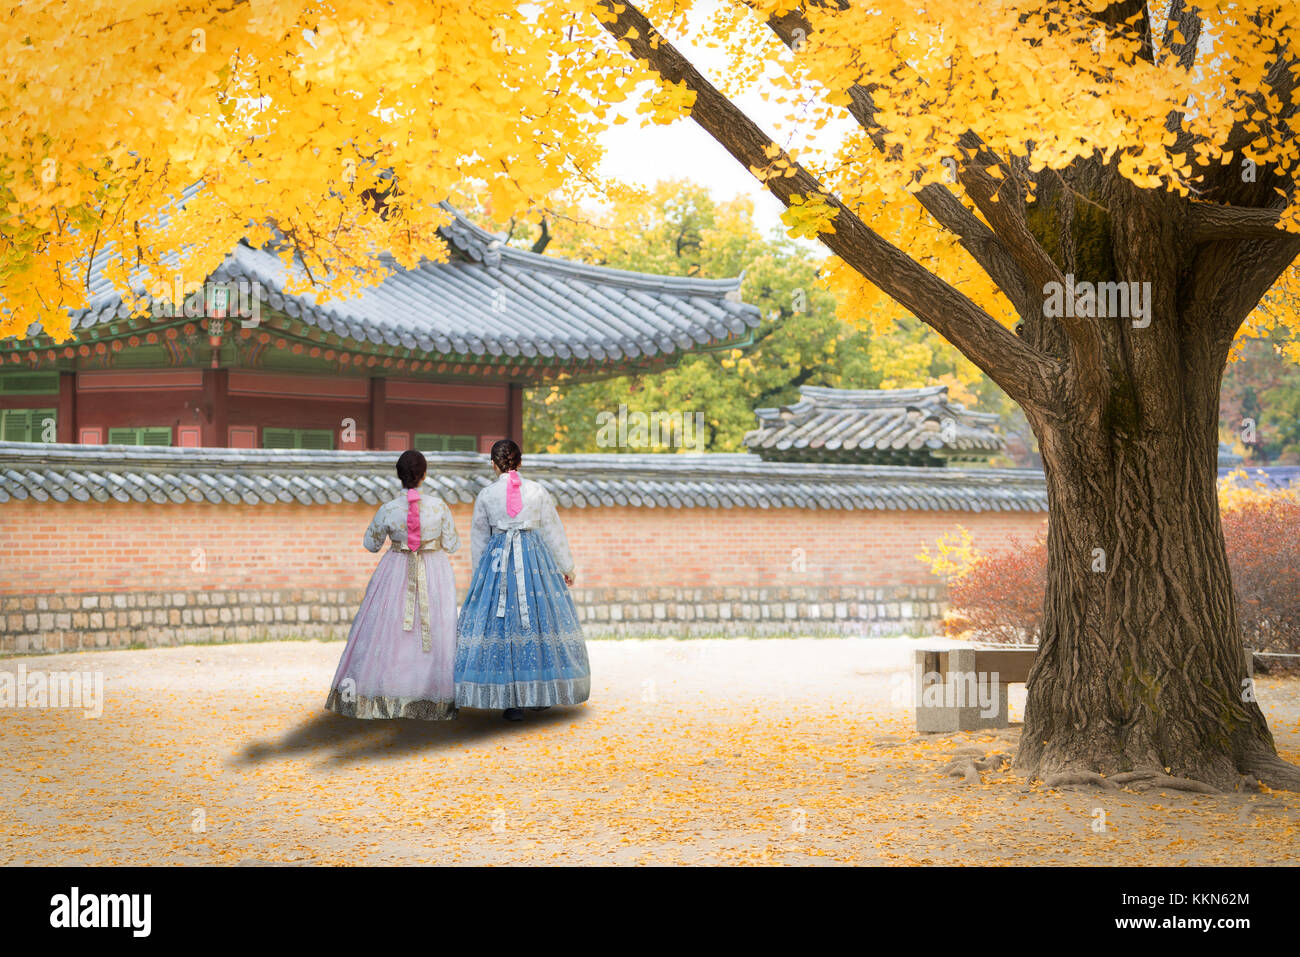 Coréen hanbok asiatique femme habillés en vêtements traditionnels autour de gyeongbokgung palace en automne saison à Séoul, Corée du Sud. Banque D'Images